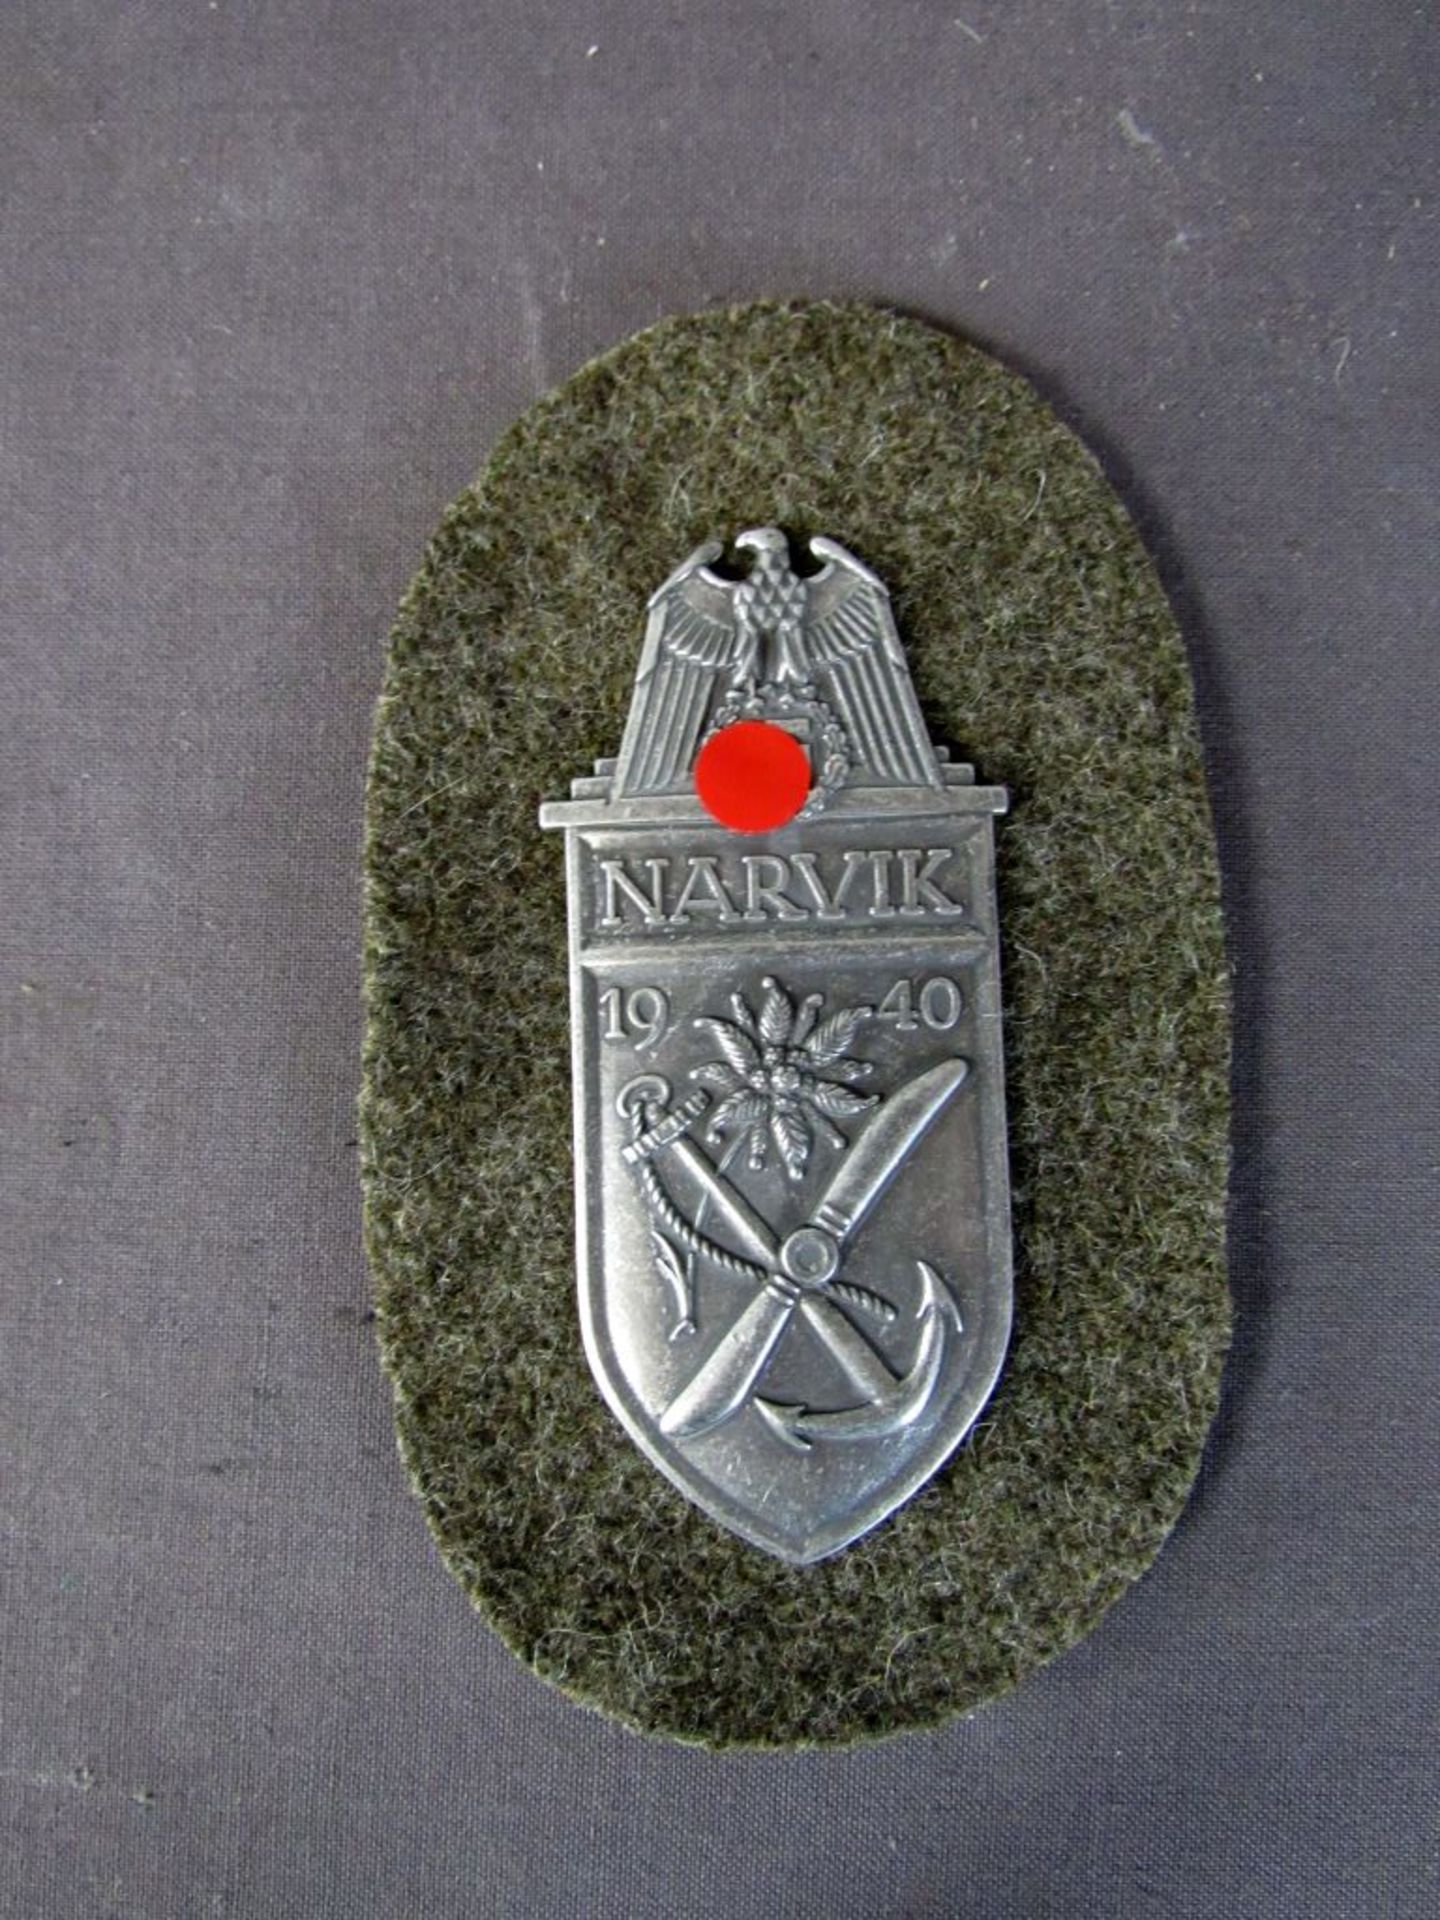 Narvik Schild auf Stoff rückseitig mit